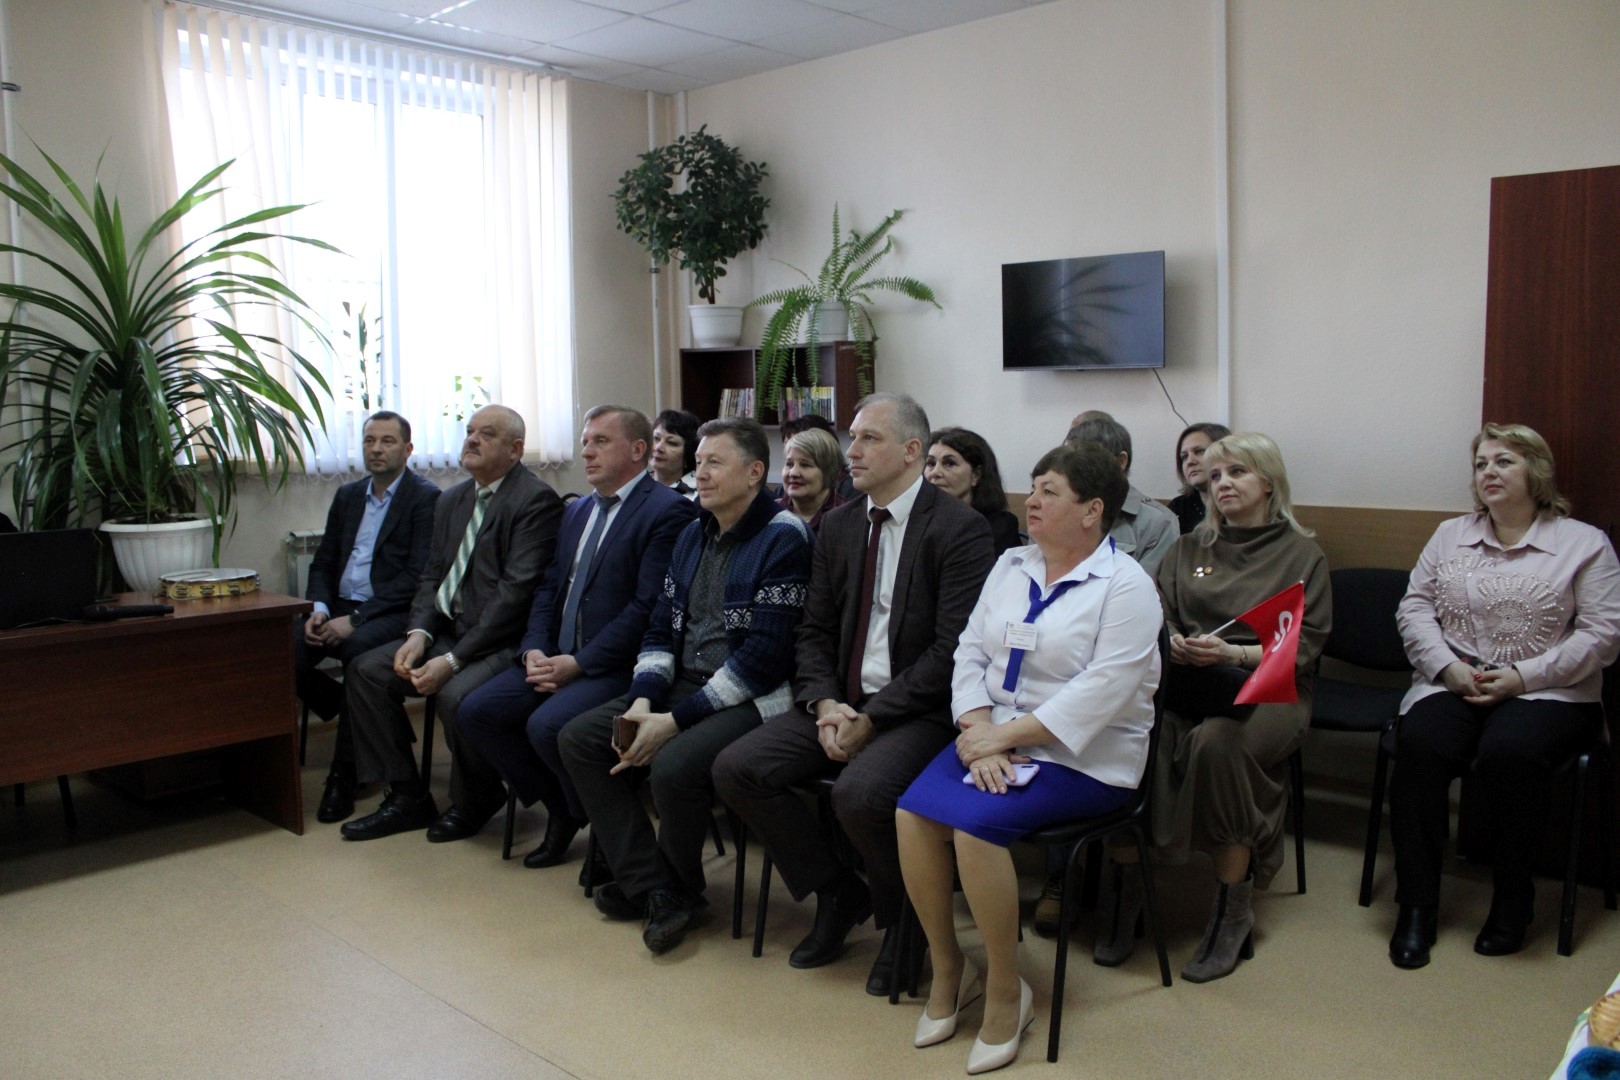 Сегодня,  28 марта, состоялось открытие Центра общения старшего поколения на базе  клиентской службы ОСФР по Воронежской области в Верхнемамонском районе..